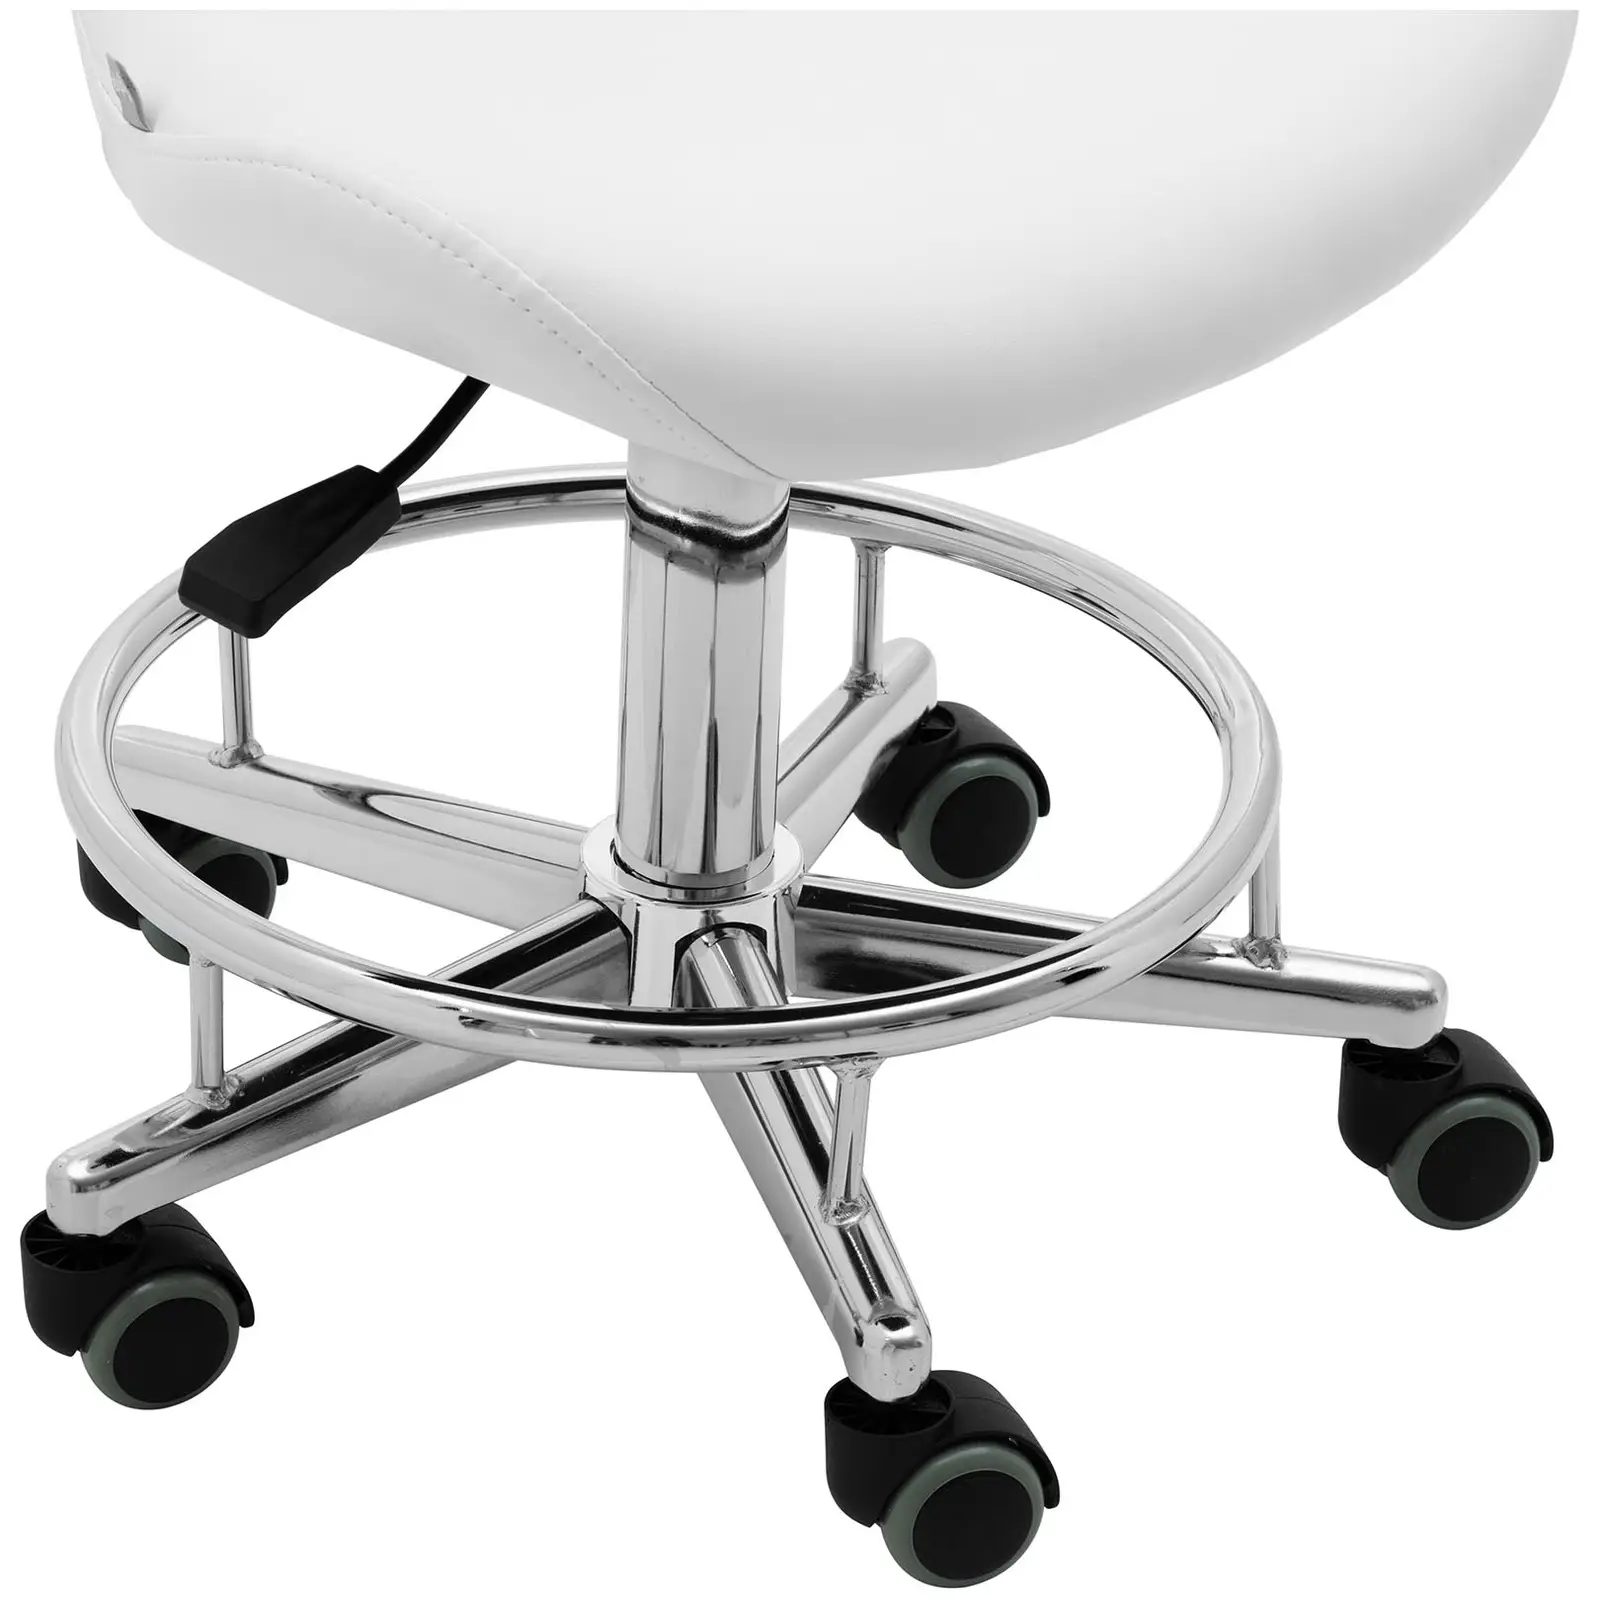 Krzesło kosmetyczne - 44 - 58 cm - 150 kg - białe